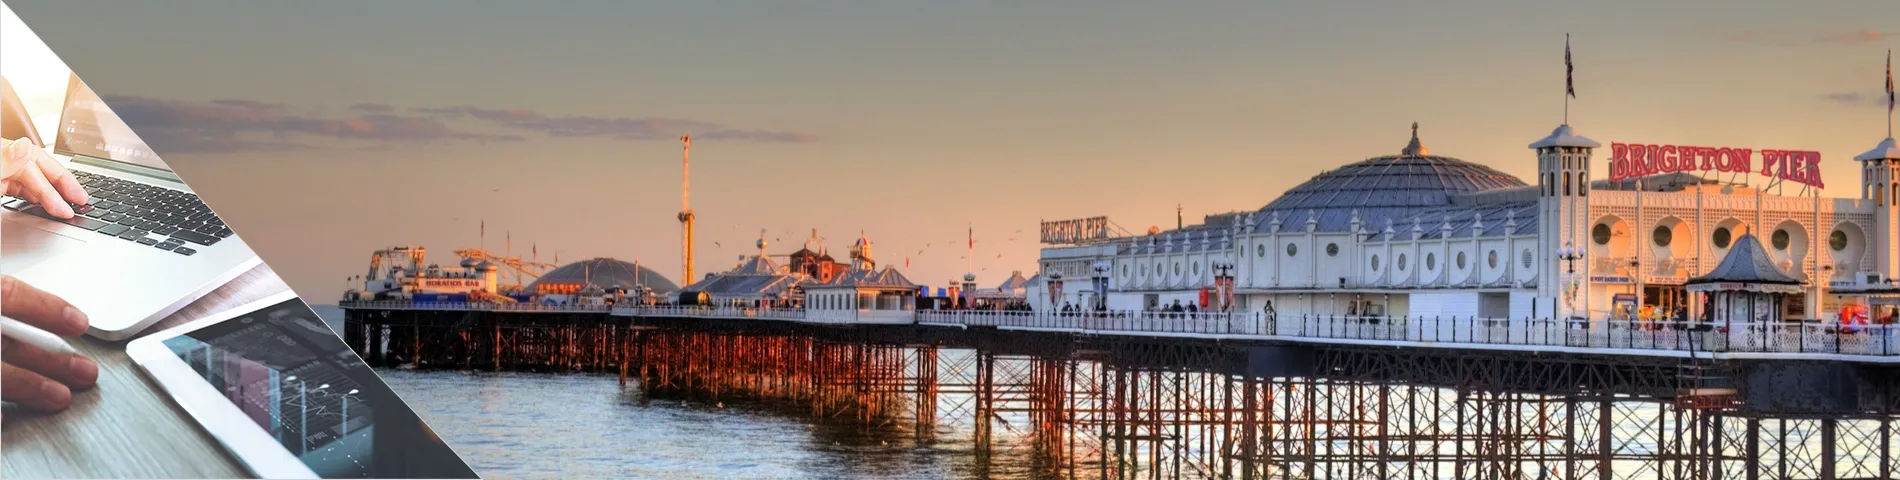 Brighton - English & Digital Media